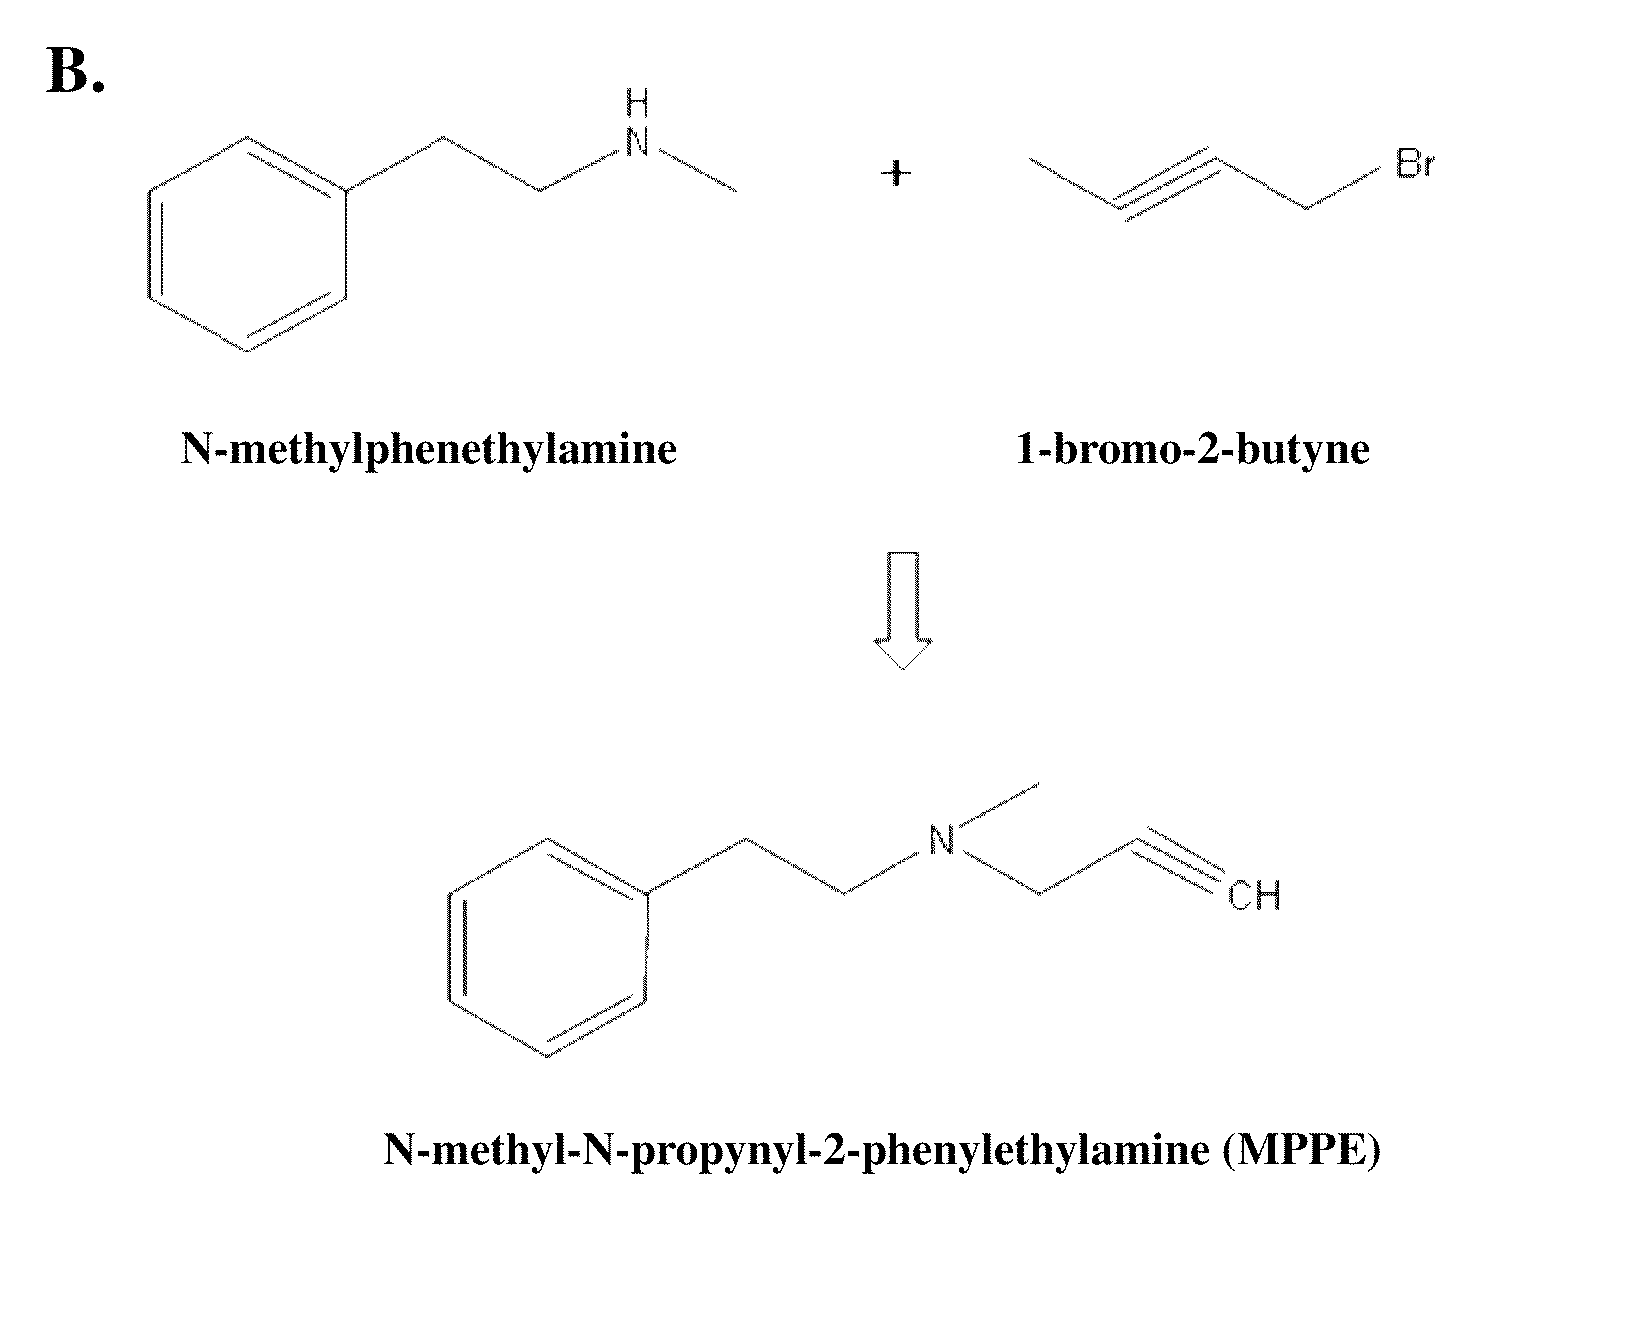 Anti-parkinsonian compounds